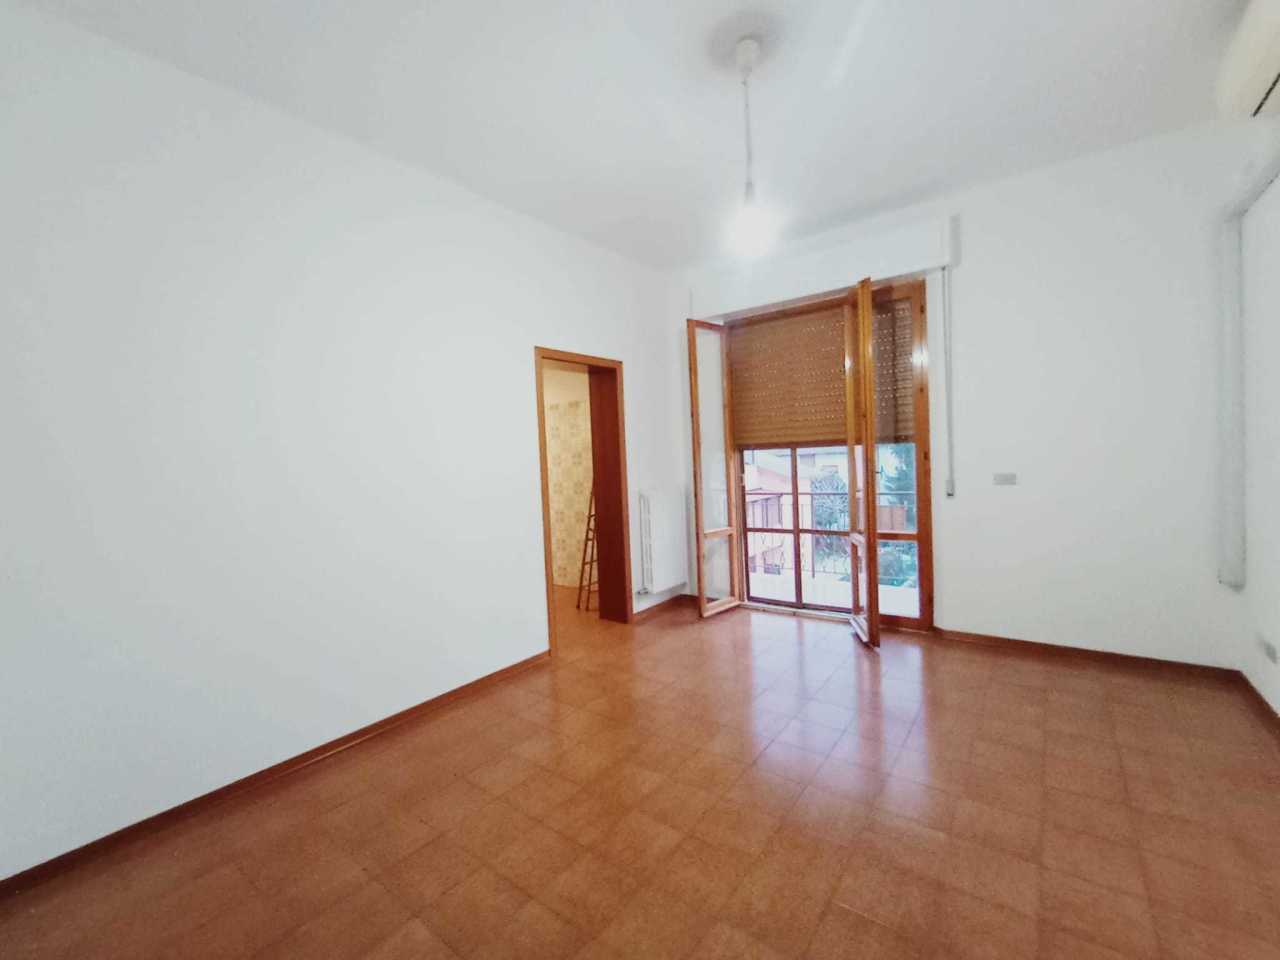 Appartamento in vendita a Castelbellino, 5 locali, prezzo € 180.000 | PortaleAgenzieImmobiliari.it